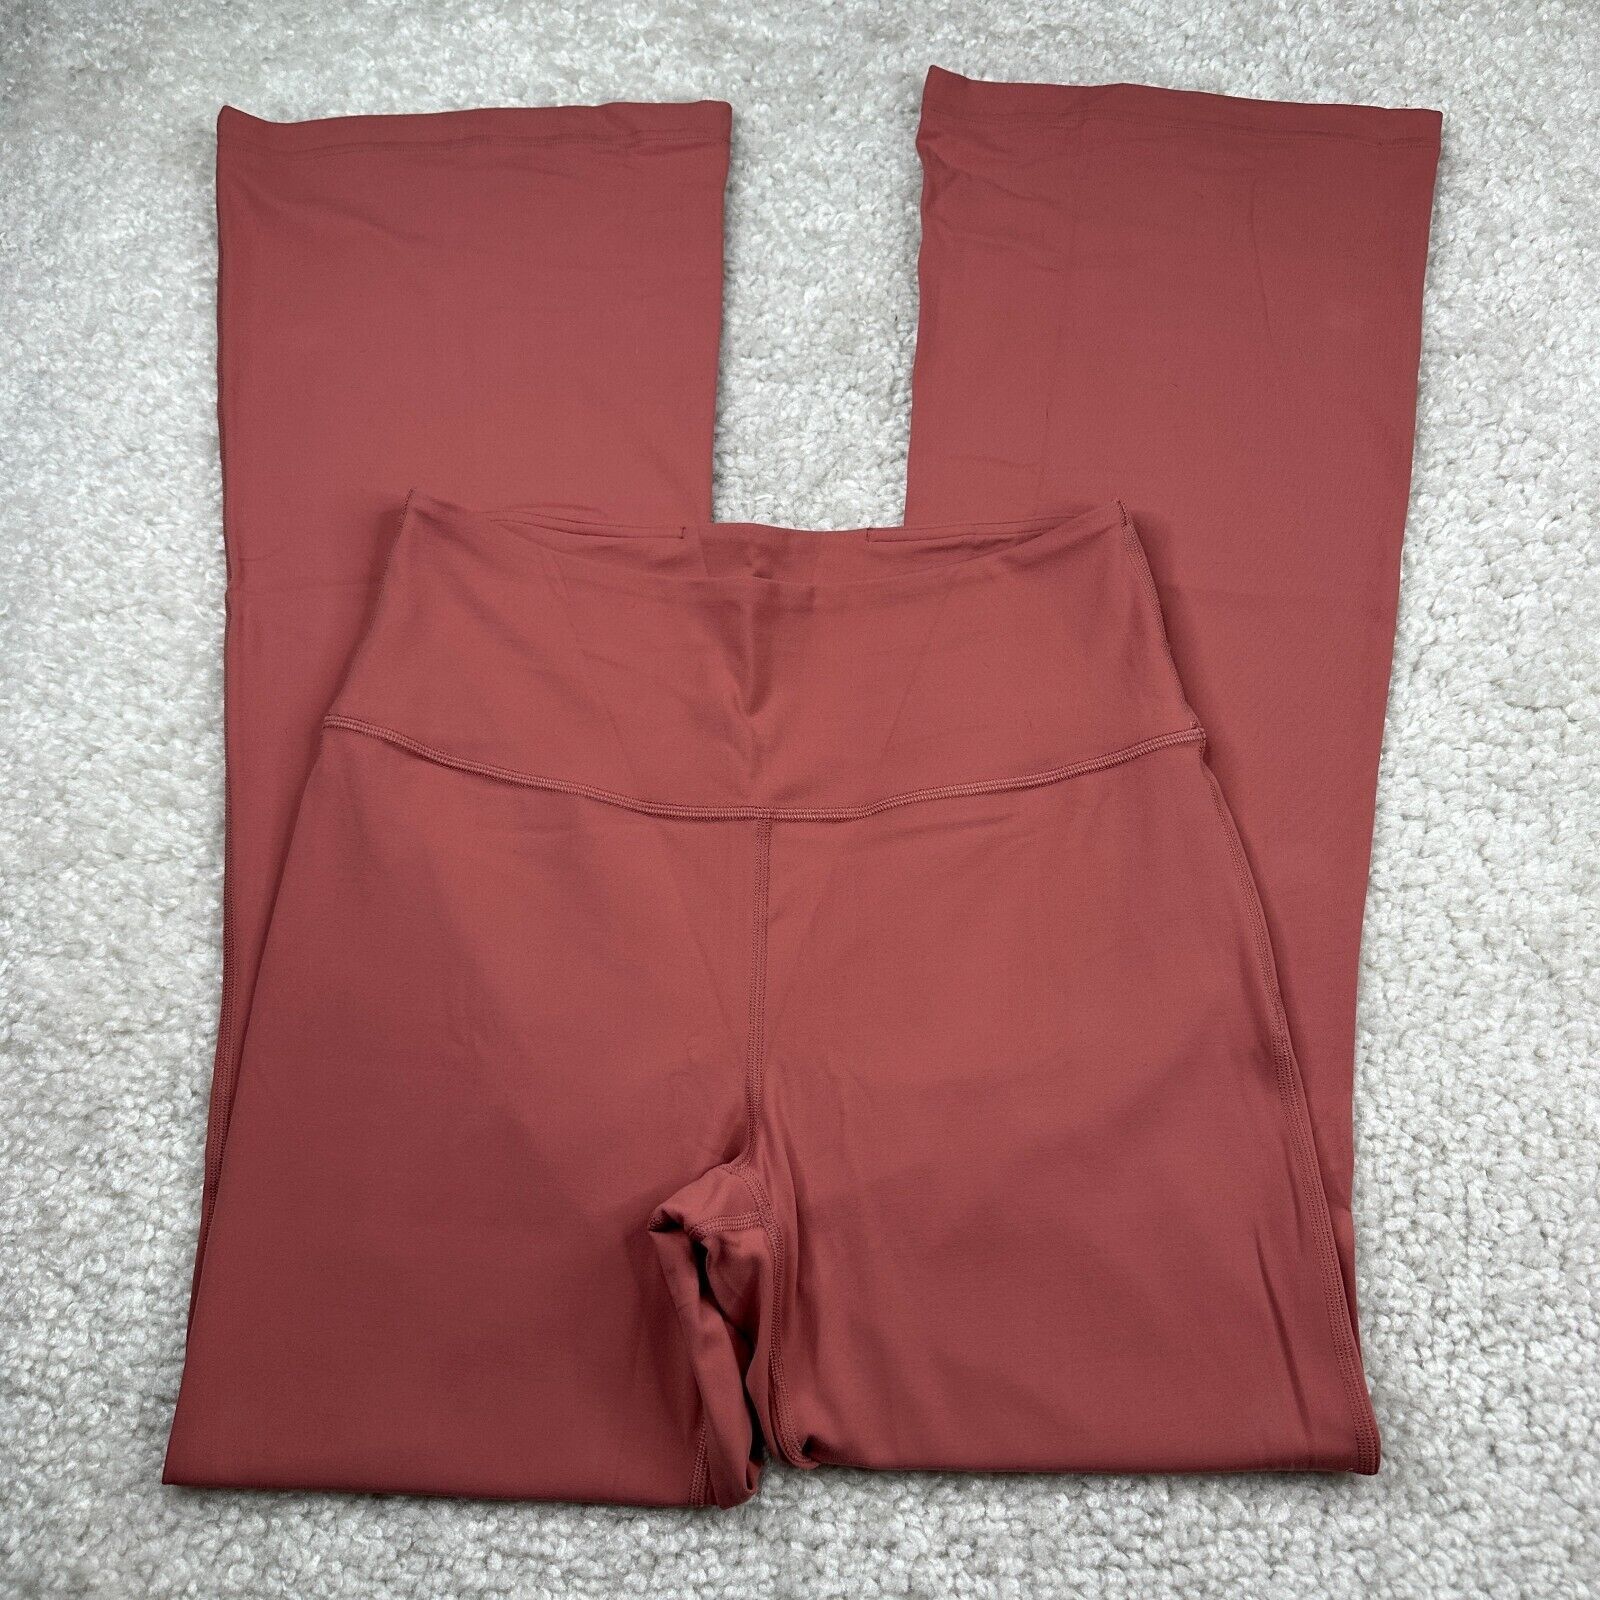 Lululemon Groove vintage pants (size 6) flaw